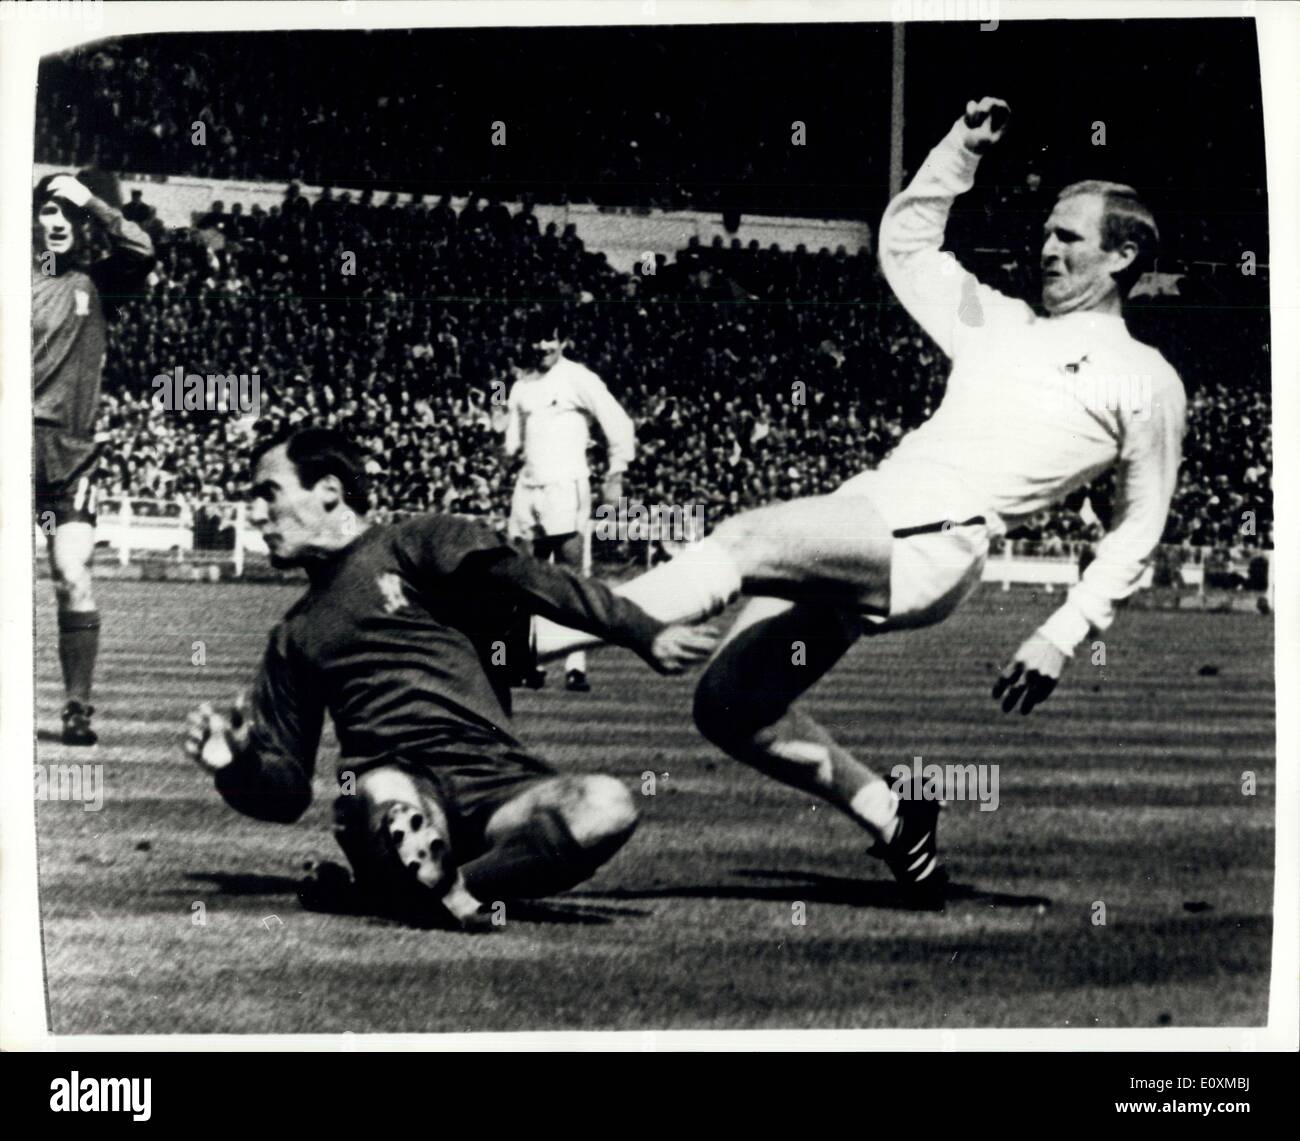 20 maggio 1967 - F.A. Per la finale di coppa a Wembley Spurs Beat Chelsea 2-1. La foto mostra: Frank Saul, di speroni, cerca un piede sinistro colpo da 20 metri come egli è affrontato da Chelsea's Alan Harris. Foto Stock